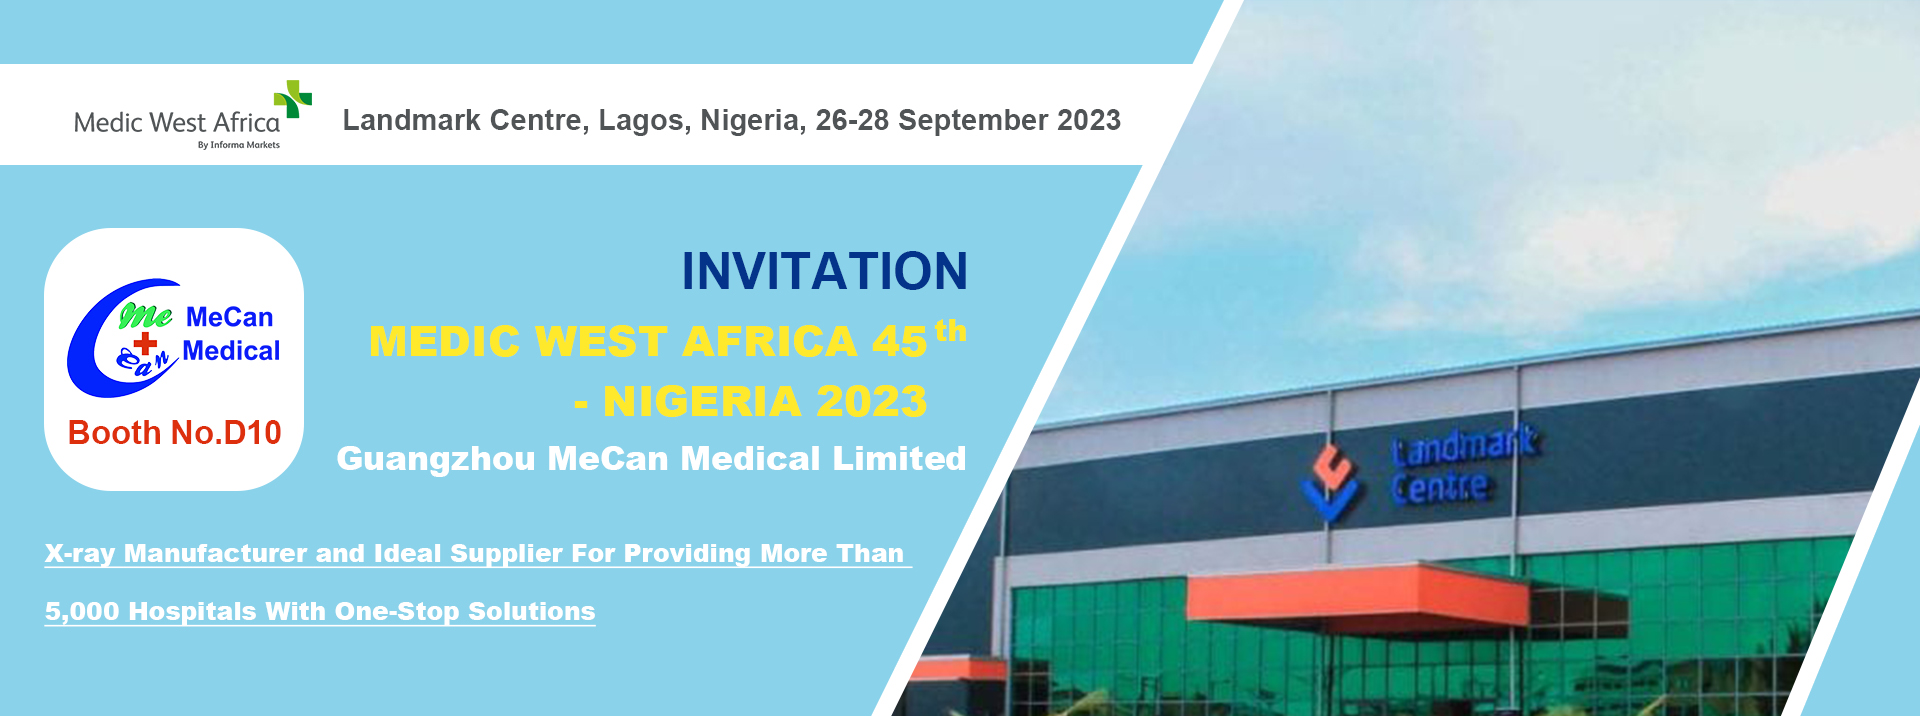 मेडिक वेस्ट अफ्रीका में मेकेन मेडिकल नाइजीरिया में 45वें स्थान पर है